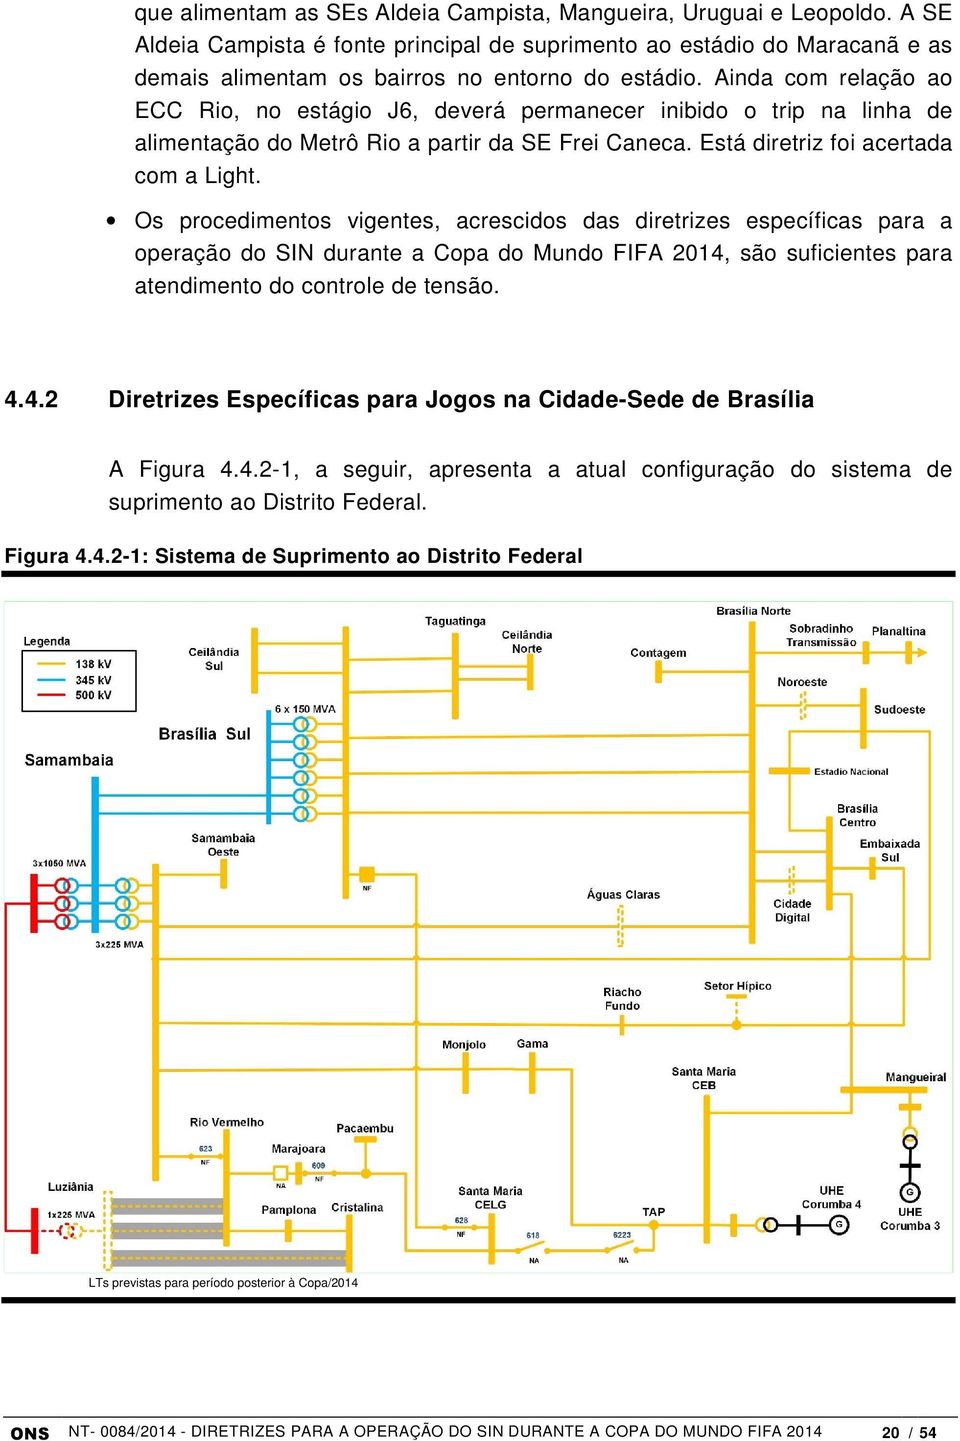 Os procedimentos vigentes, acrescidos das diretrizes específicas para a operação do SIN durante a Copa do Mundo FIFA 2014, são suficientes para atendimento do controle de tensão. 4.4.2 Diretrizes Específicas para Jogos na Cidade-Sede de Brasília A Figura 4.